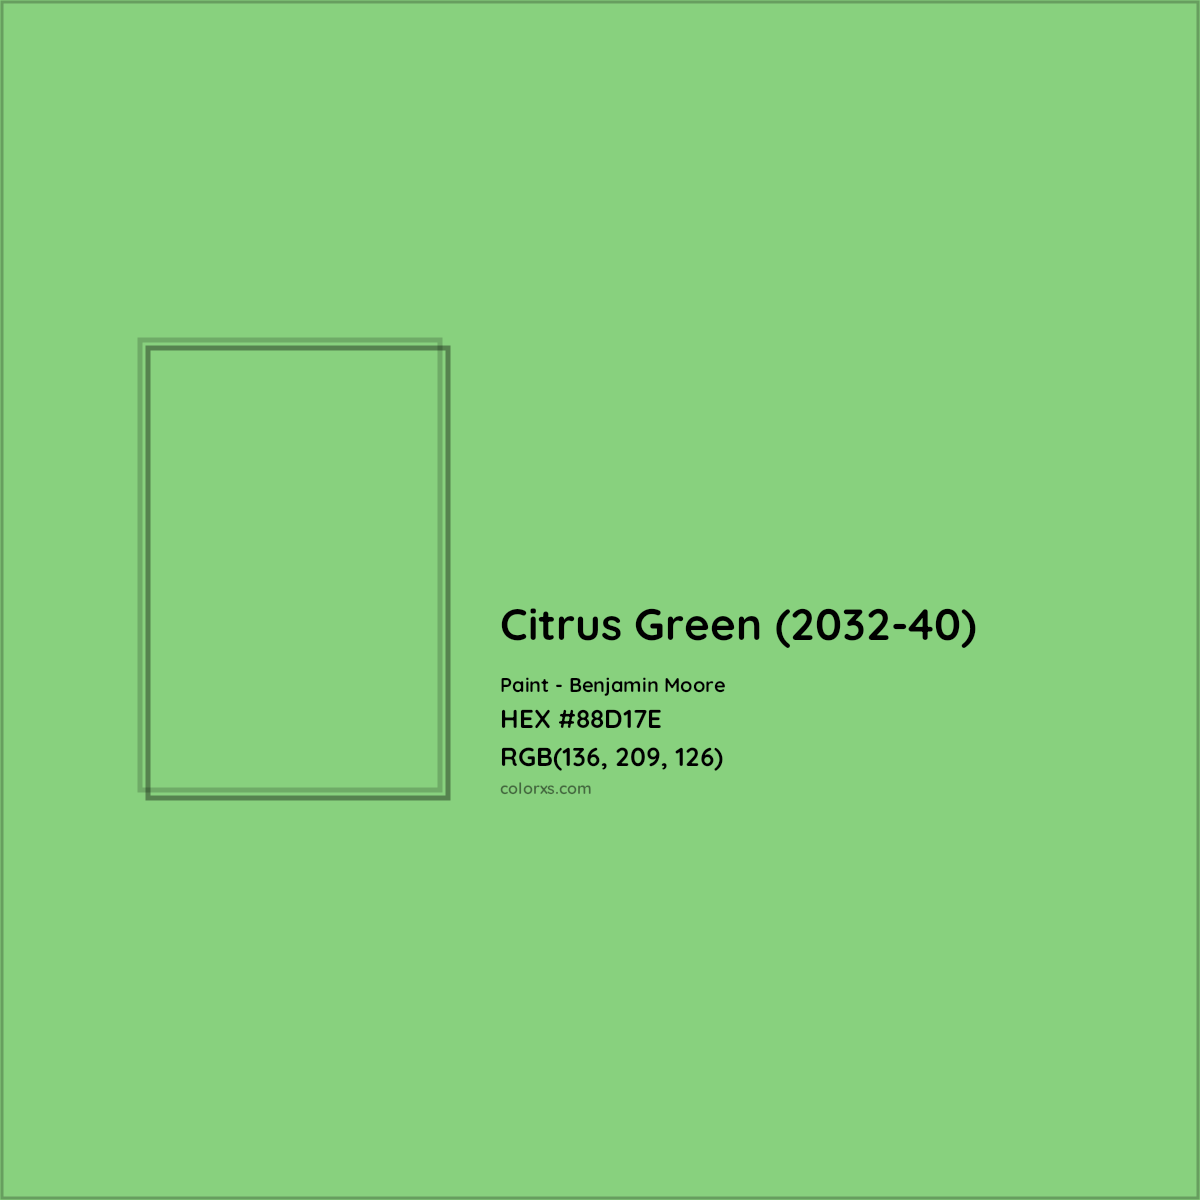 HEX #88D17E Citrus Green (2032-40) Paint Benjamin Moore - Color Code